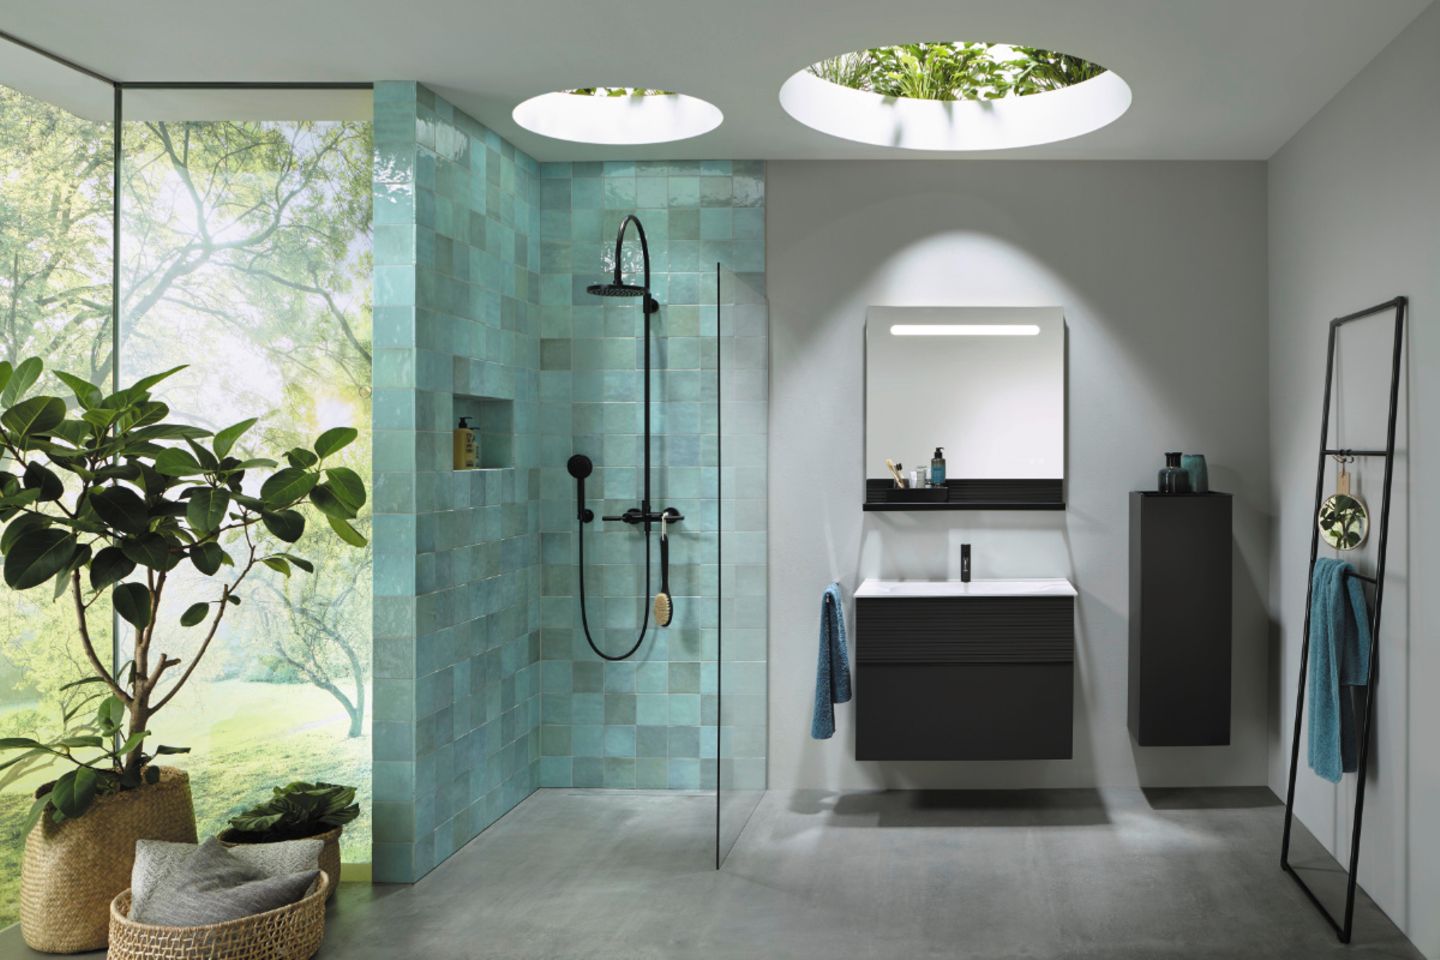 Badezimmer mit Dusche stilvolle Ideen amp Bilder SCH 214 NER WOHNEN 